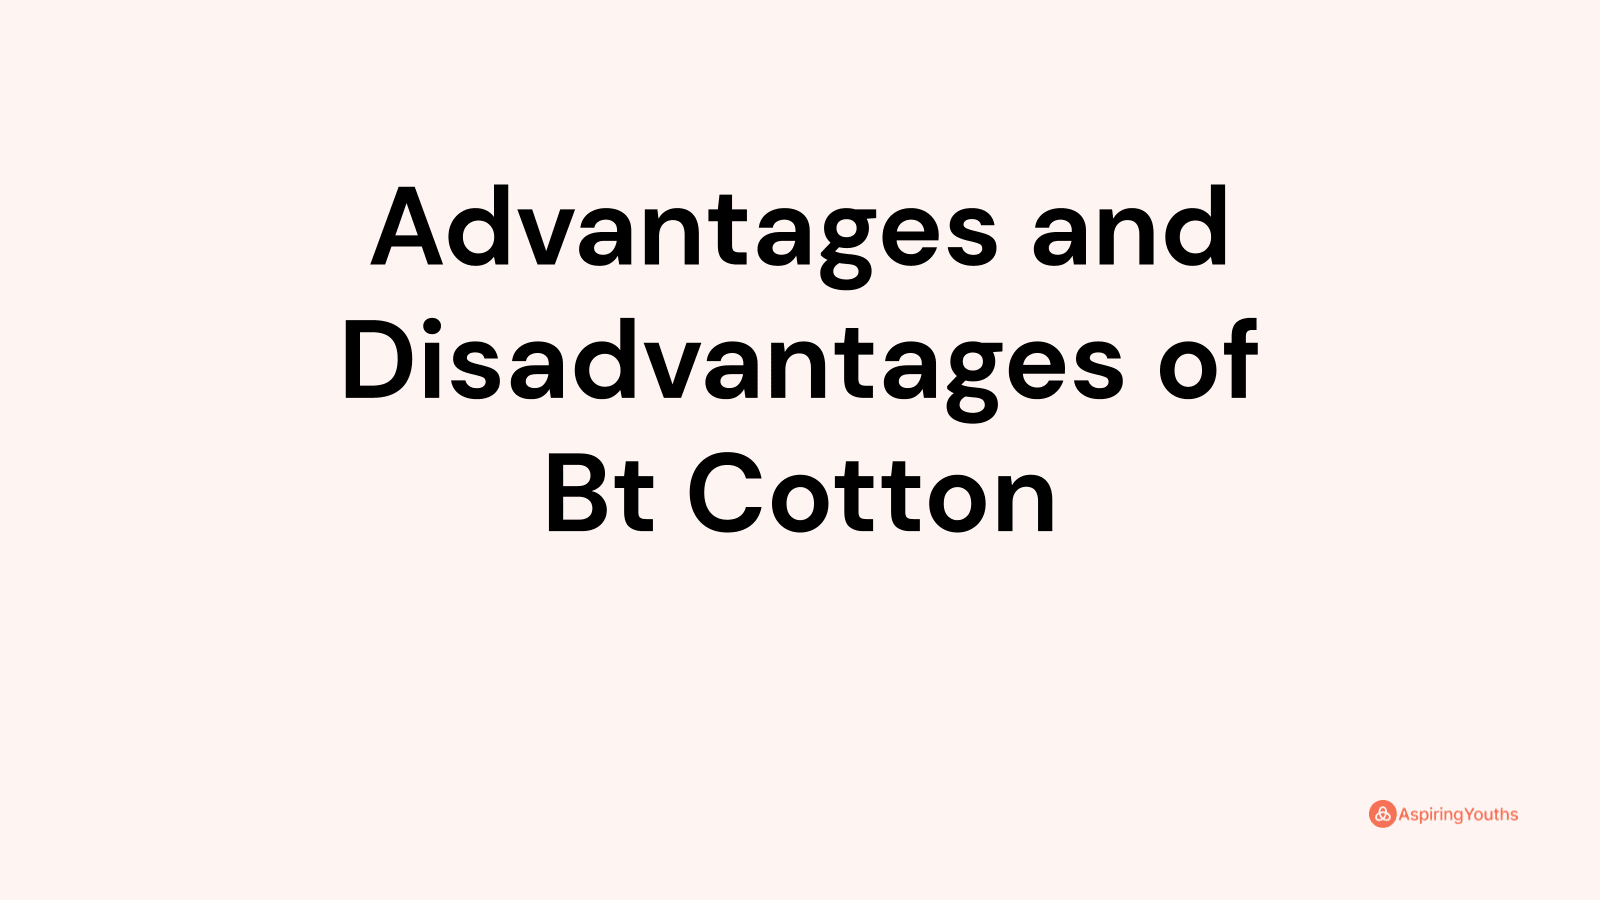 Advantages and disadvantages of Bt Cotton